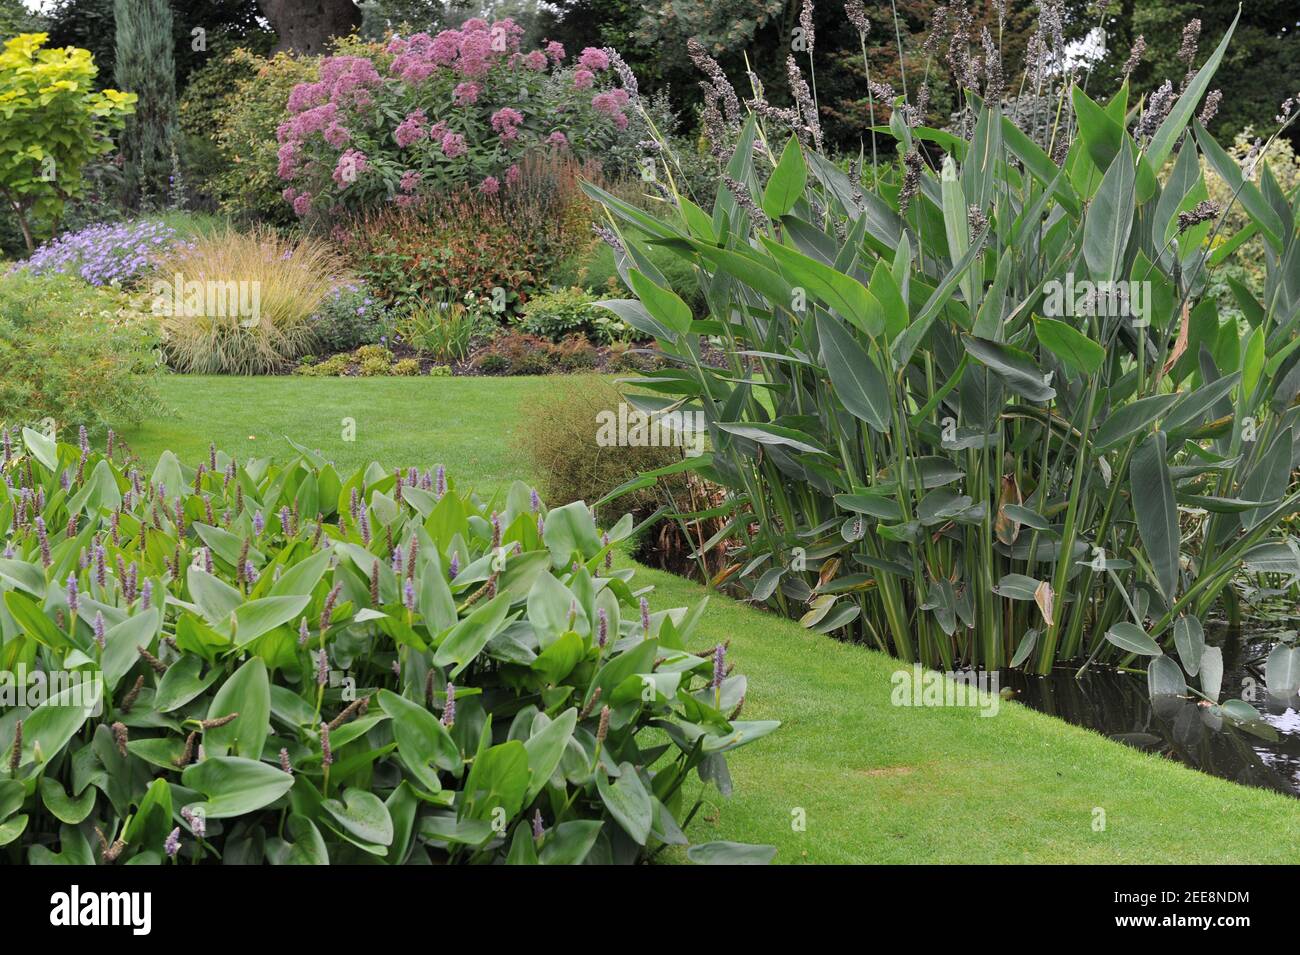 In Wasser gepflanzt Herz-blättrige Pfifferel-Unkraut (Pontederia cordata) Und pulverförmige Alligatorflagge (Thalia dealbata) Blühen Sie in einem Teich im Garten von Beth Chatto Stockfoto